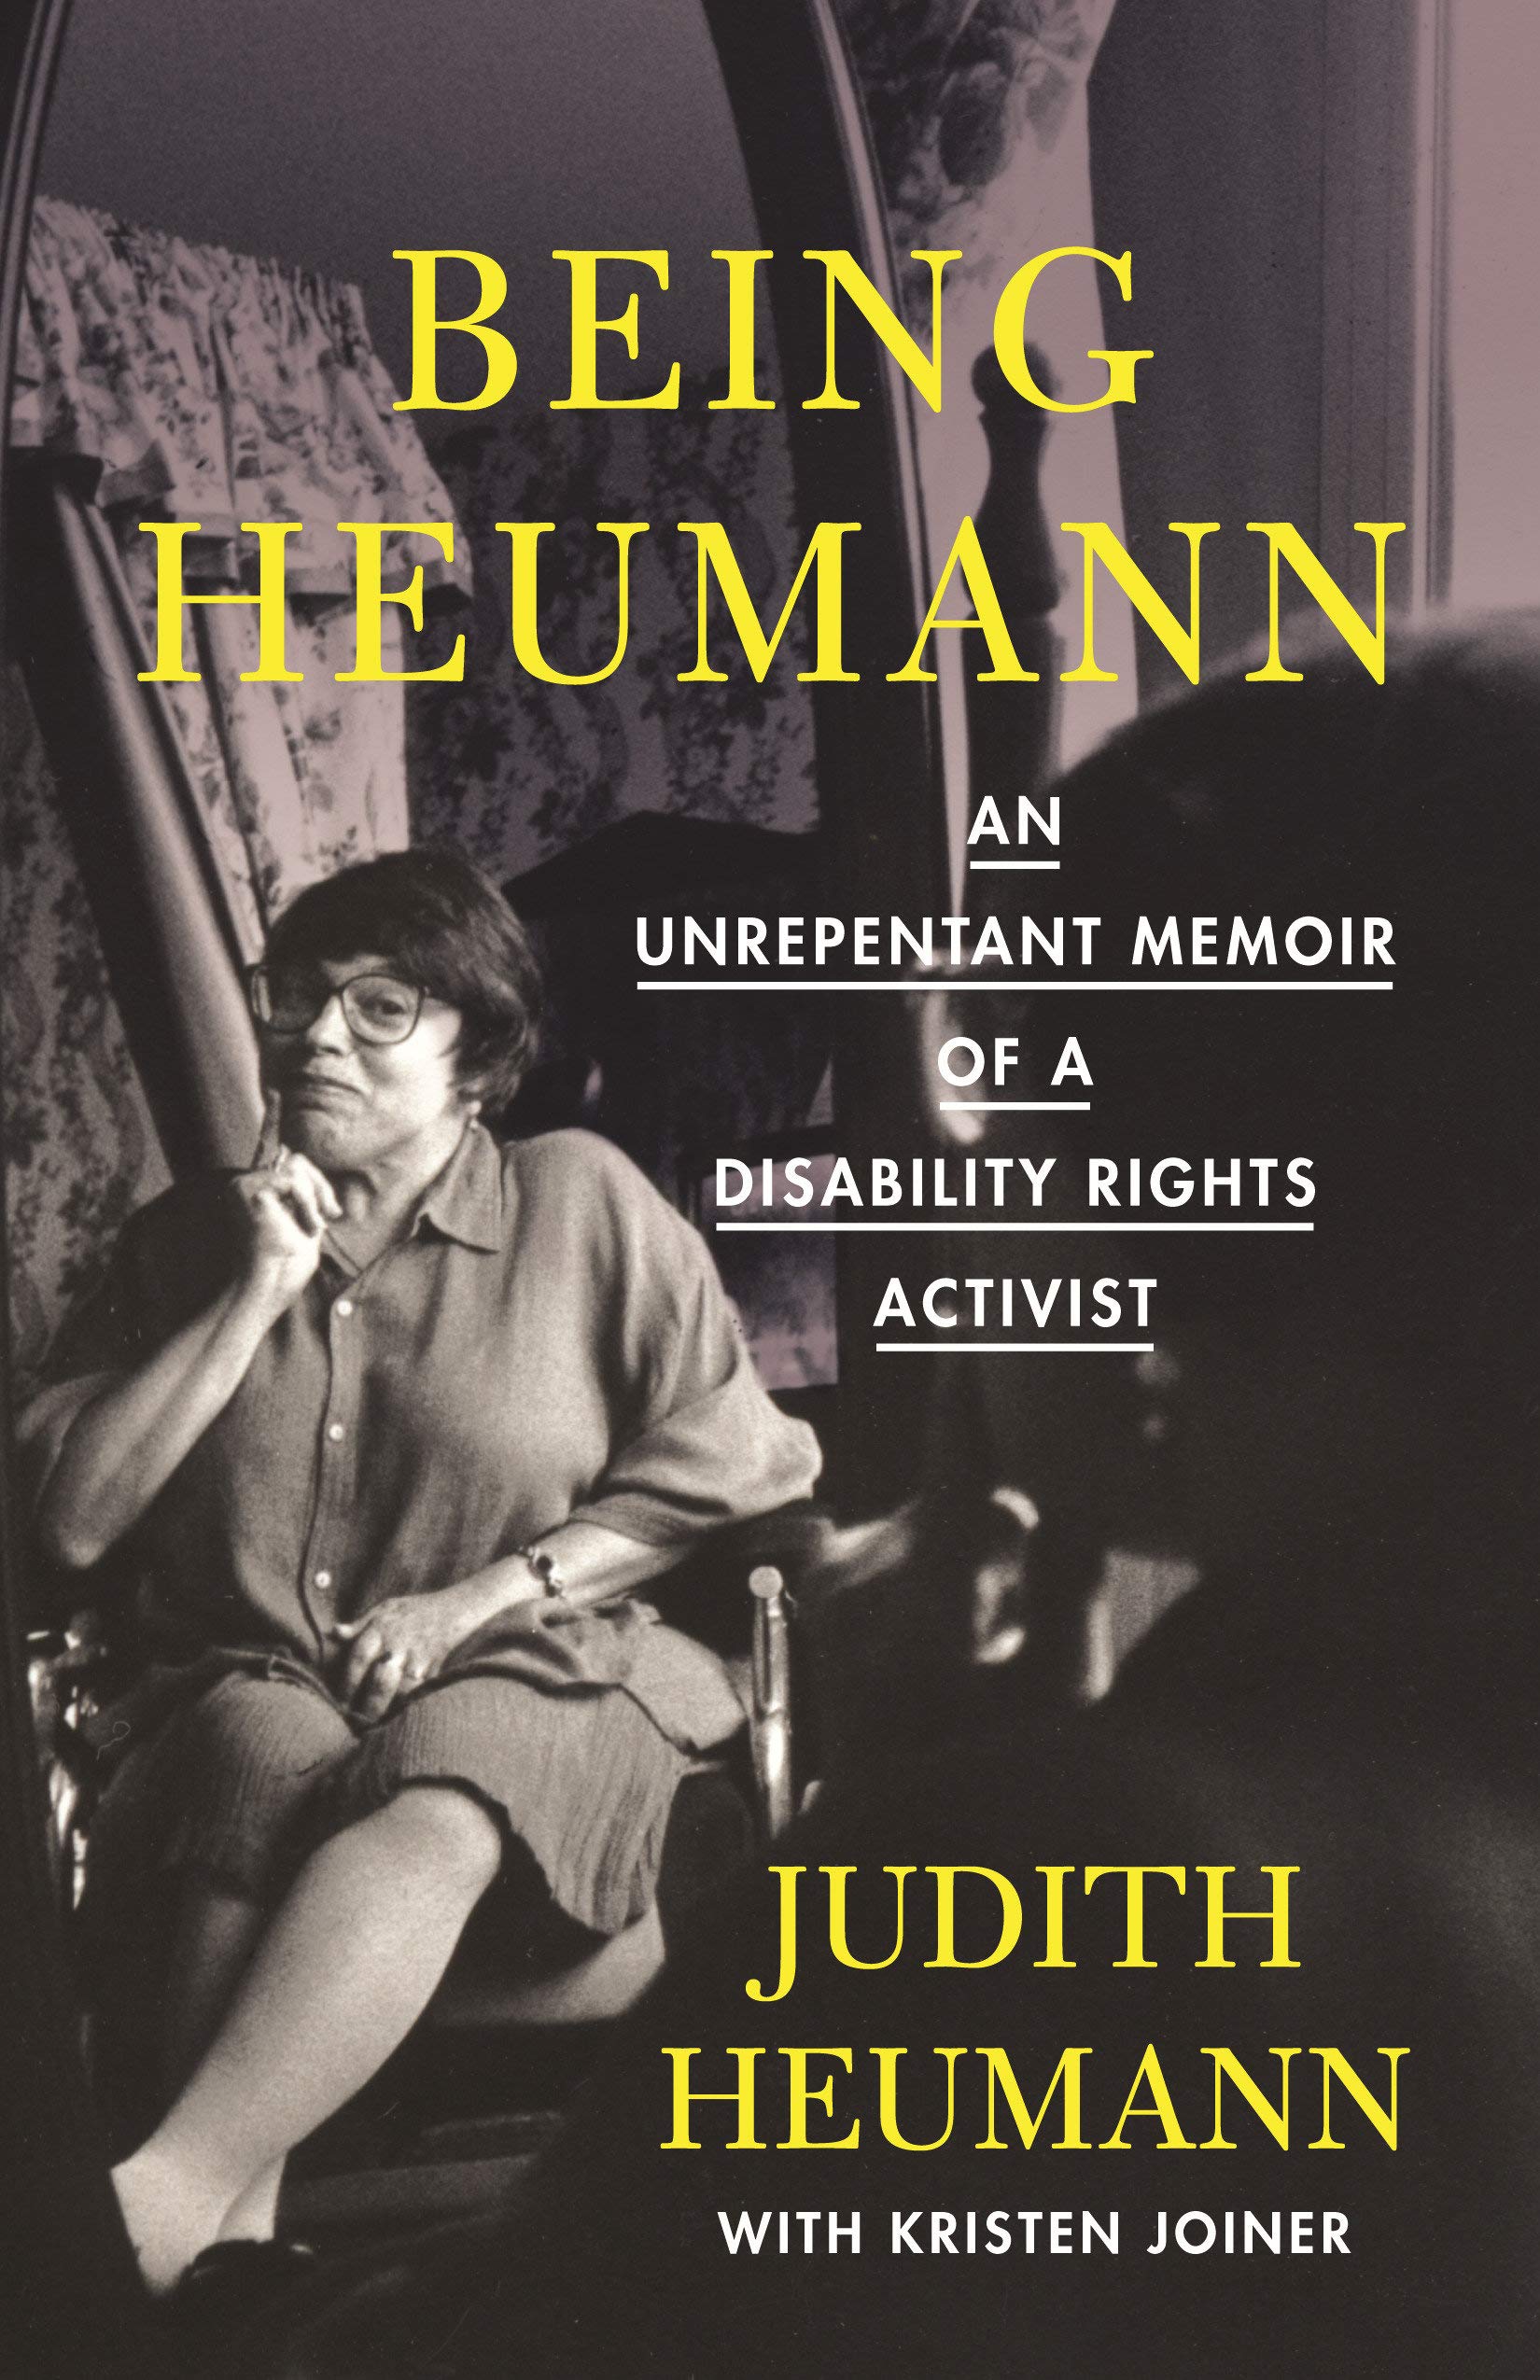 Cover of "Being Heumann" by Judith Heumann